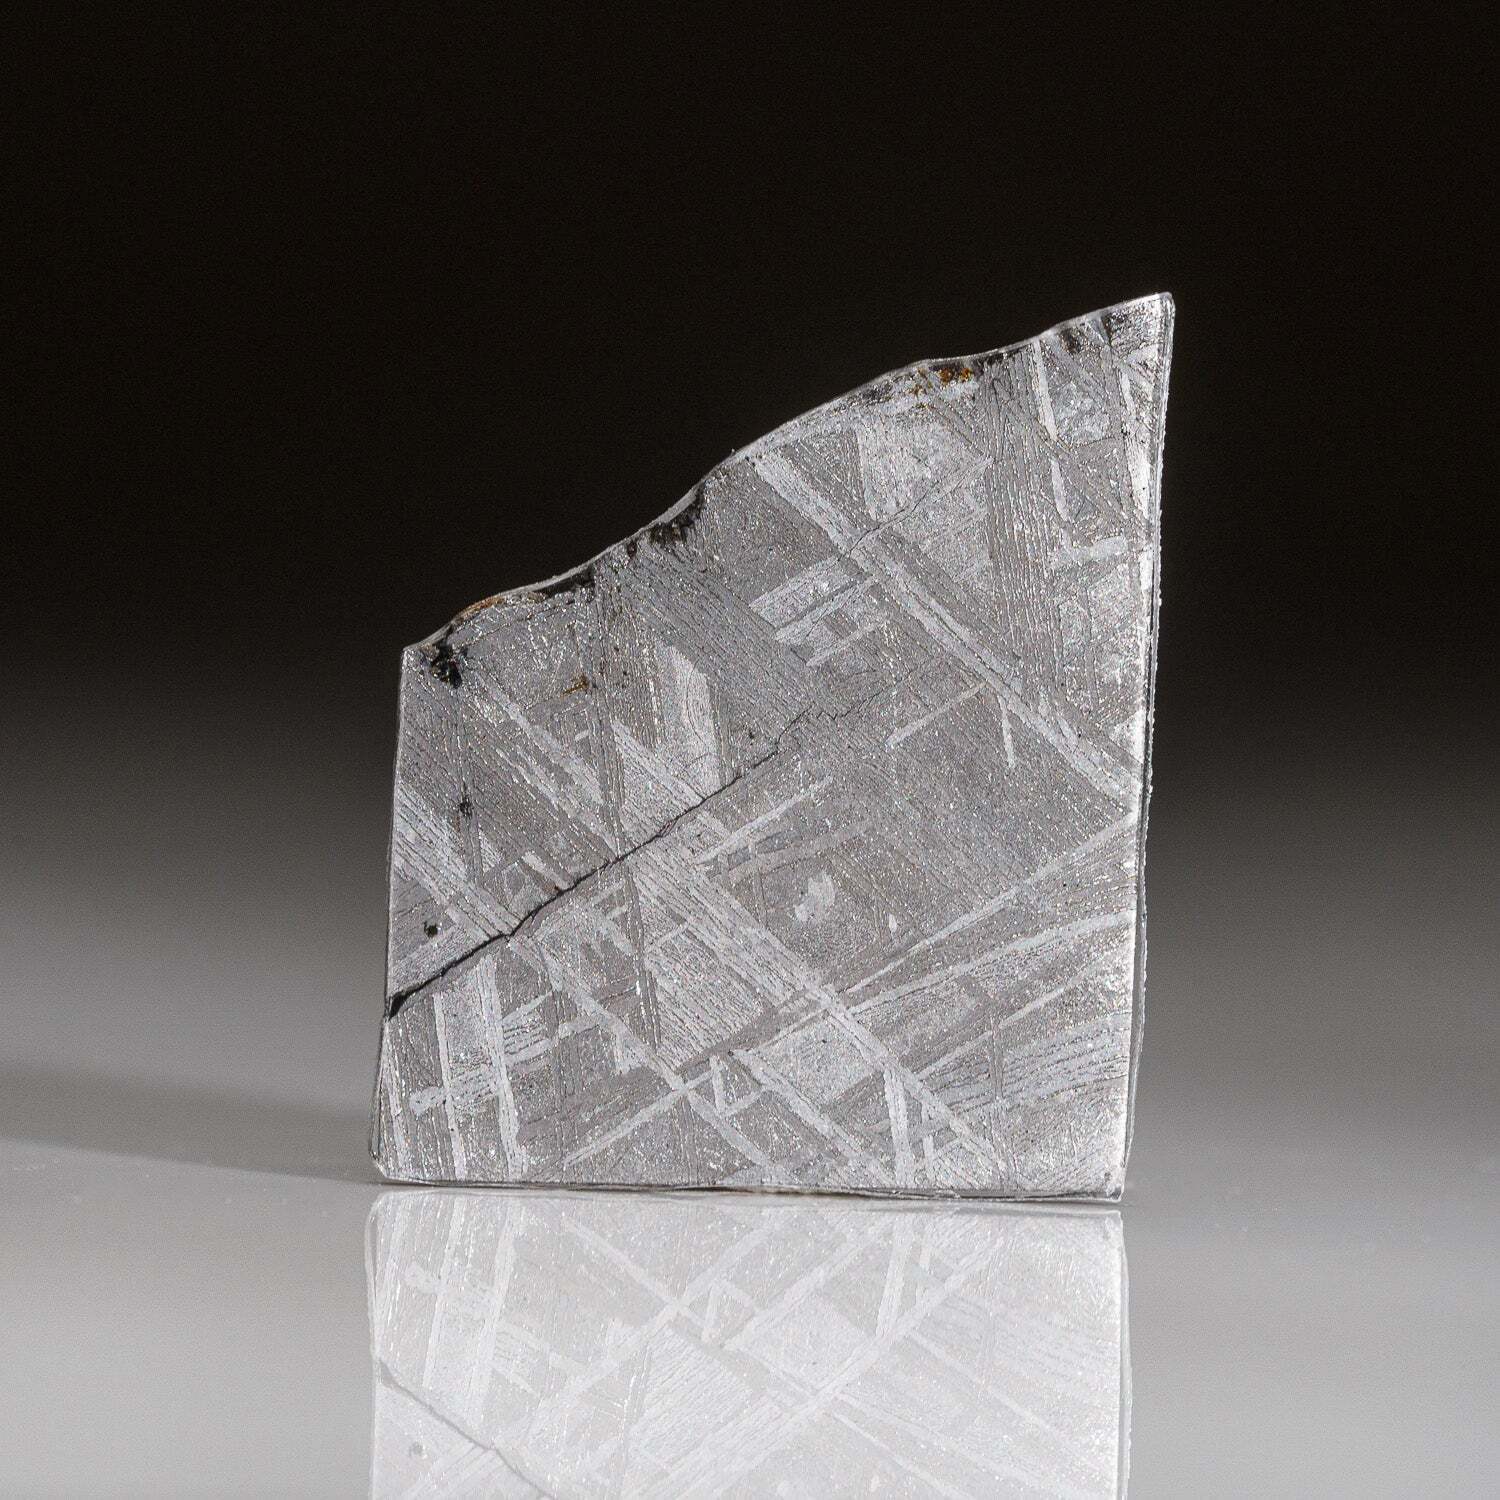 Genuine Muonionalusta Meteorite Slice (6.9 grams)